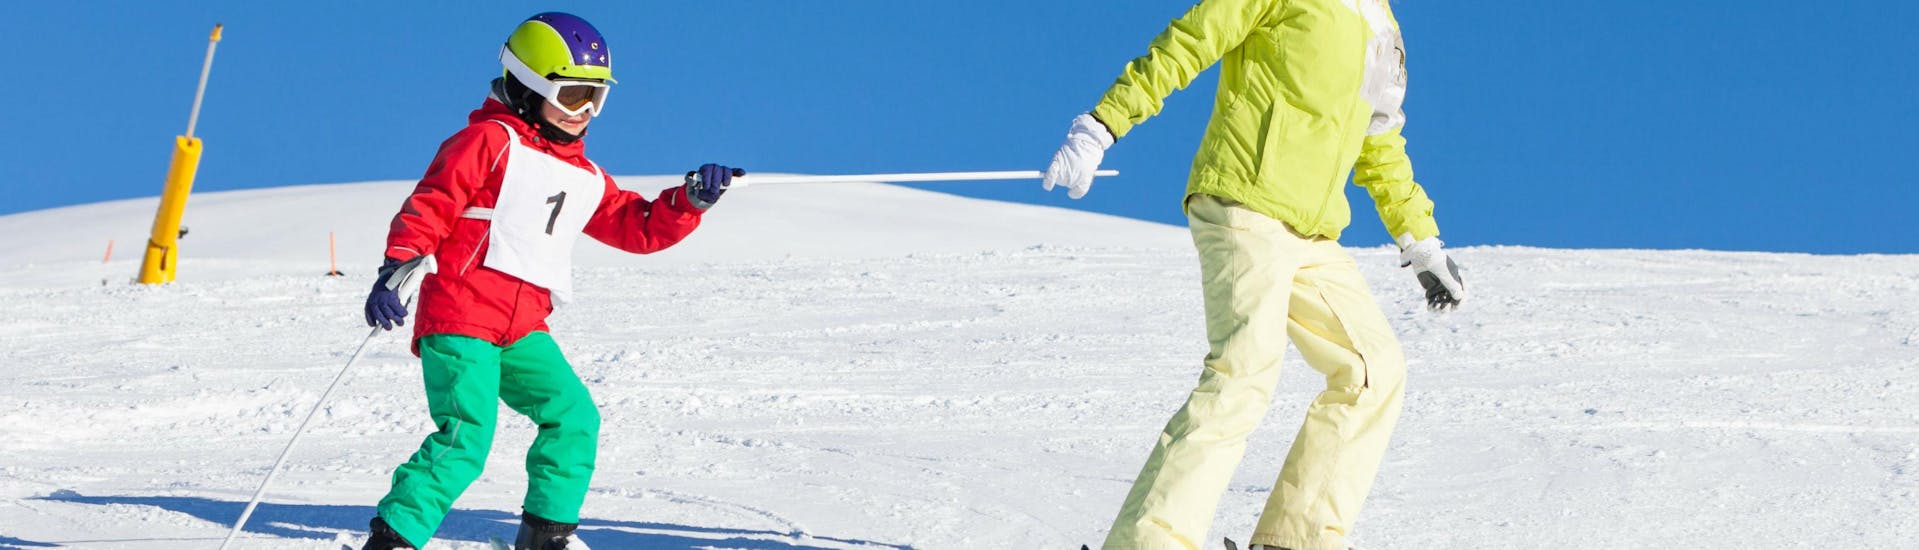 Un jeune enfant apprend son premier saut sur la neige pendant le cours de ski pour enfants de l'école de ski de Pontedilegno.